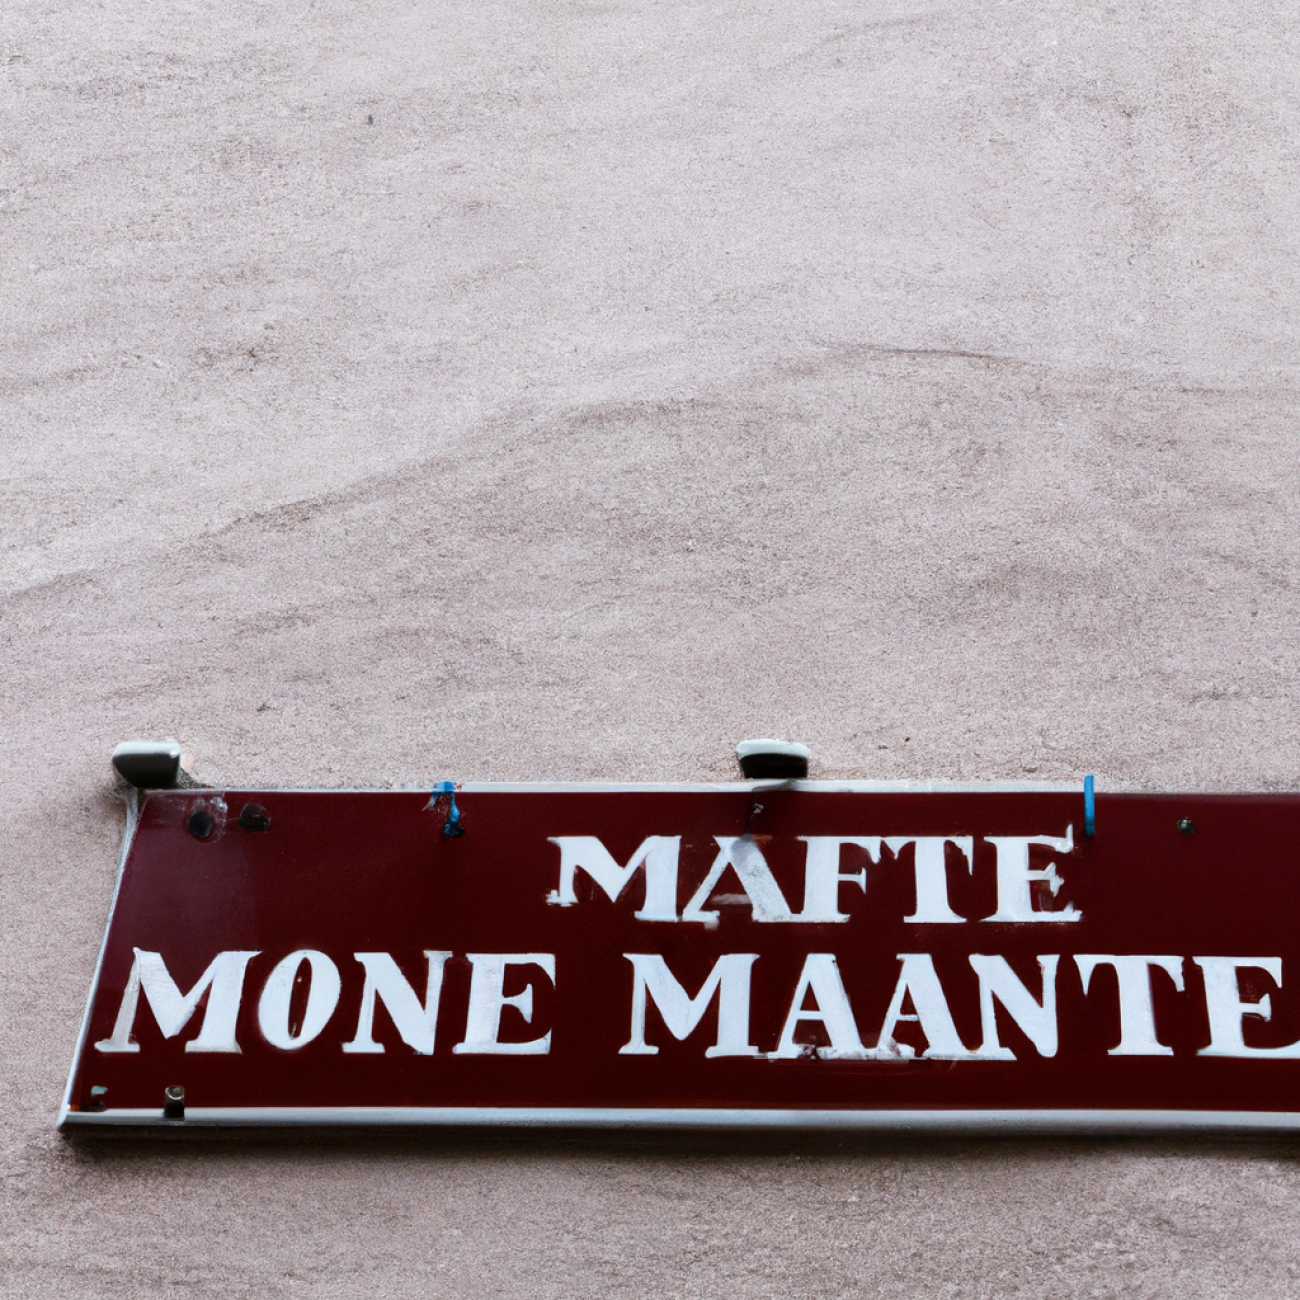 9. Café Montmarte